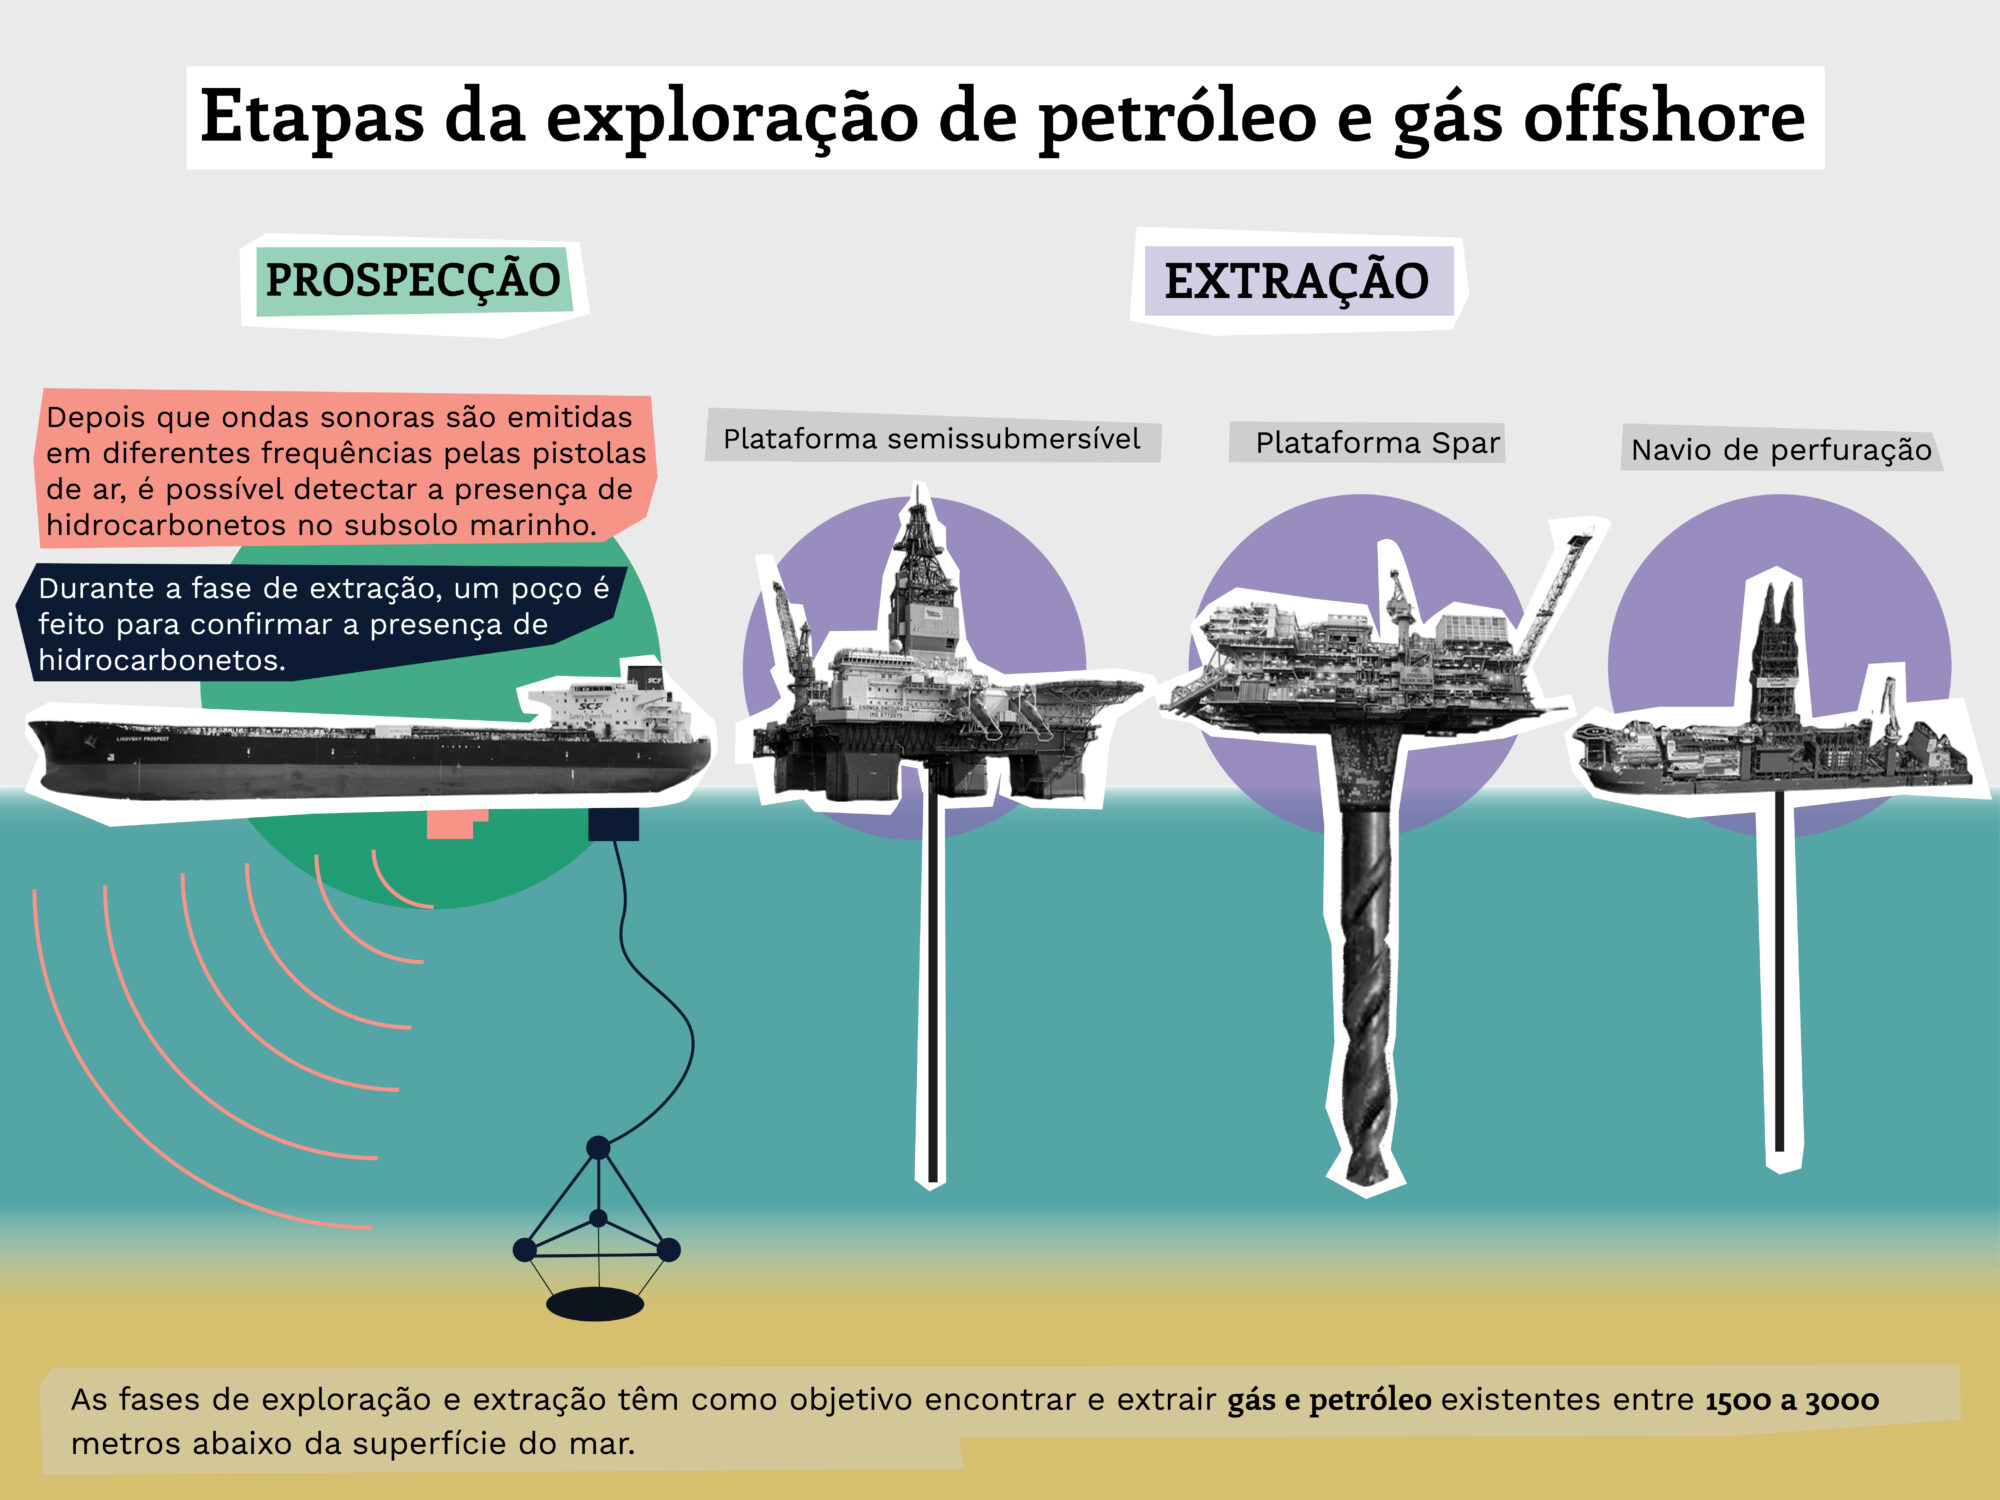 gráfico mostrando os estágios do desenvolvimento de petróleo e gás offshore